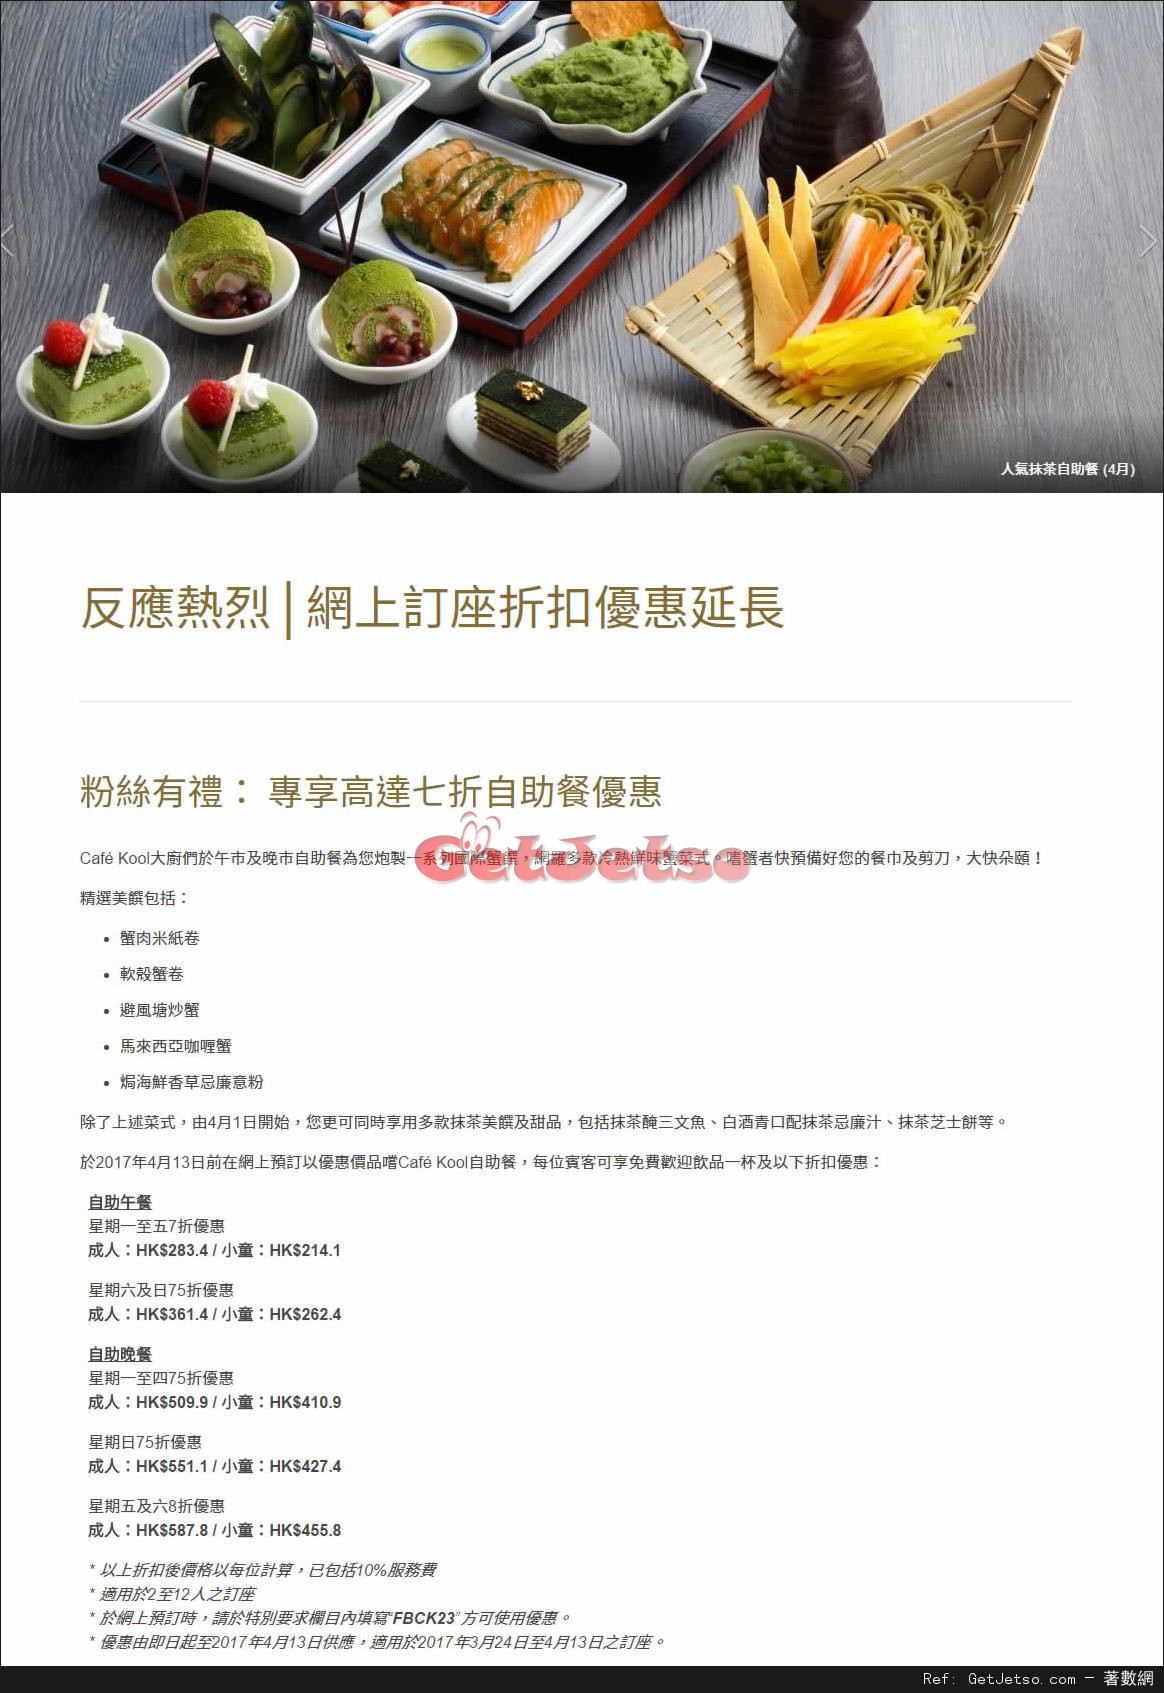 九龍香格里拉大酒店低至7折自助餐優惠(至17年4月13日)圖片1